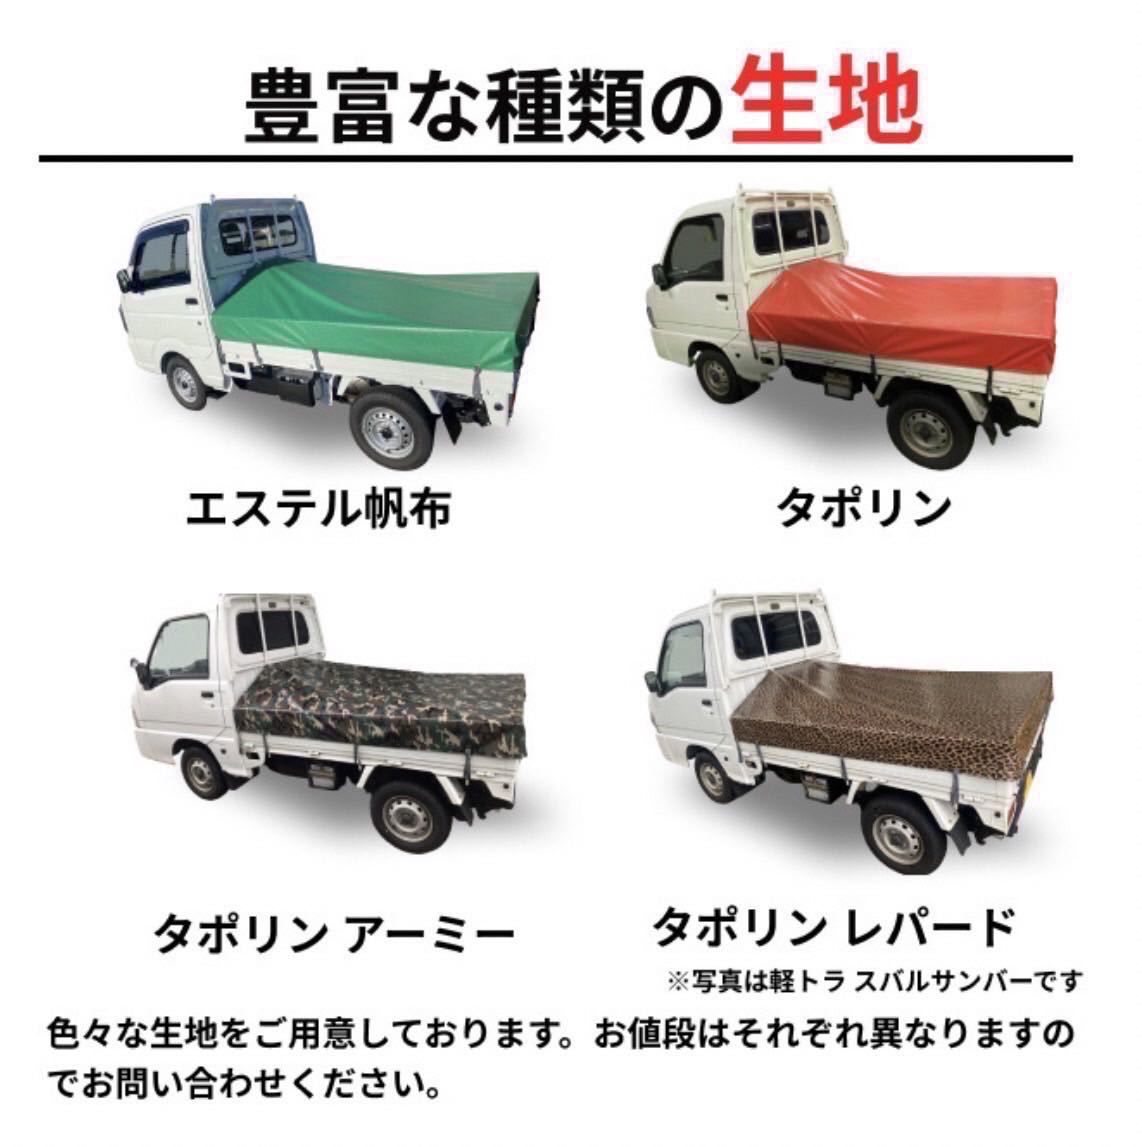 [ резинка имеется ] Daihatsu Hijet jumbo специальный кузов сиденье Army Leopard легкий грузовик резина нет. 500 иен скидка 